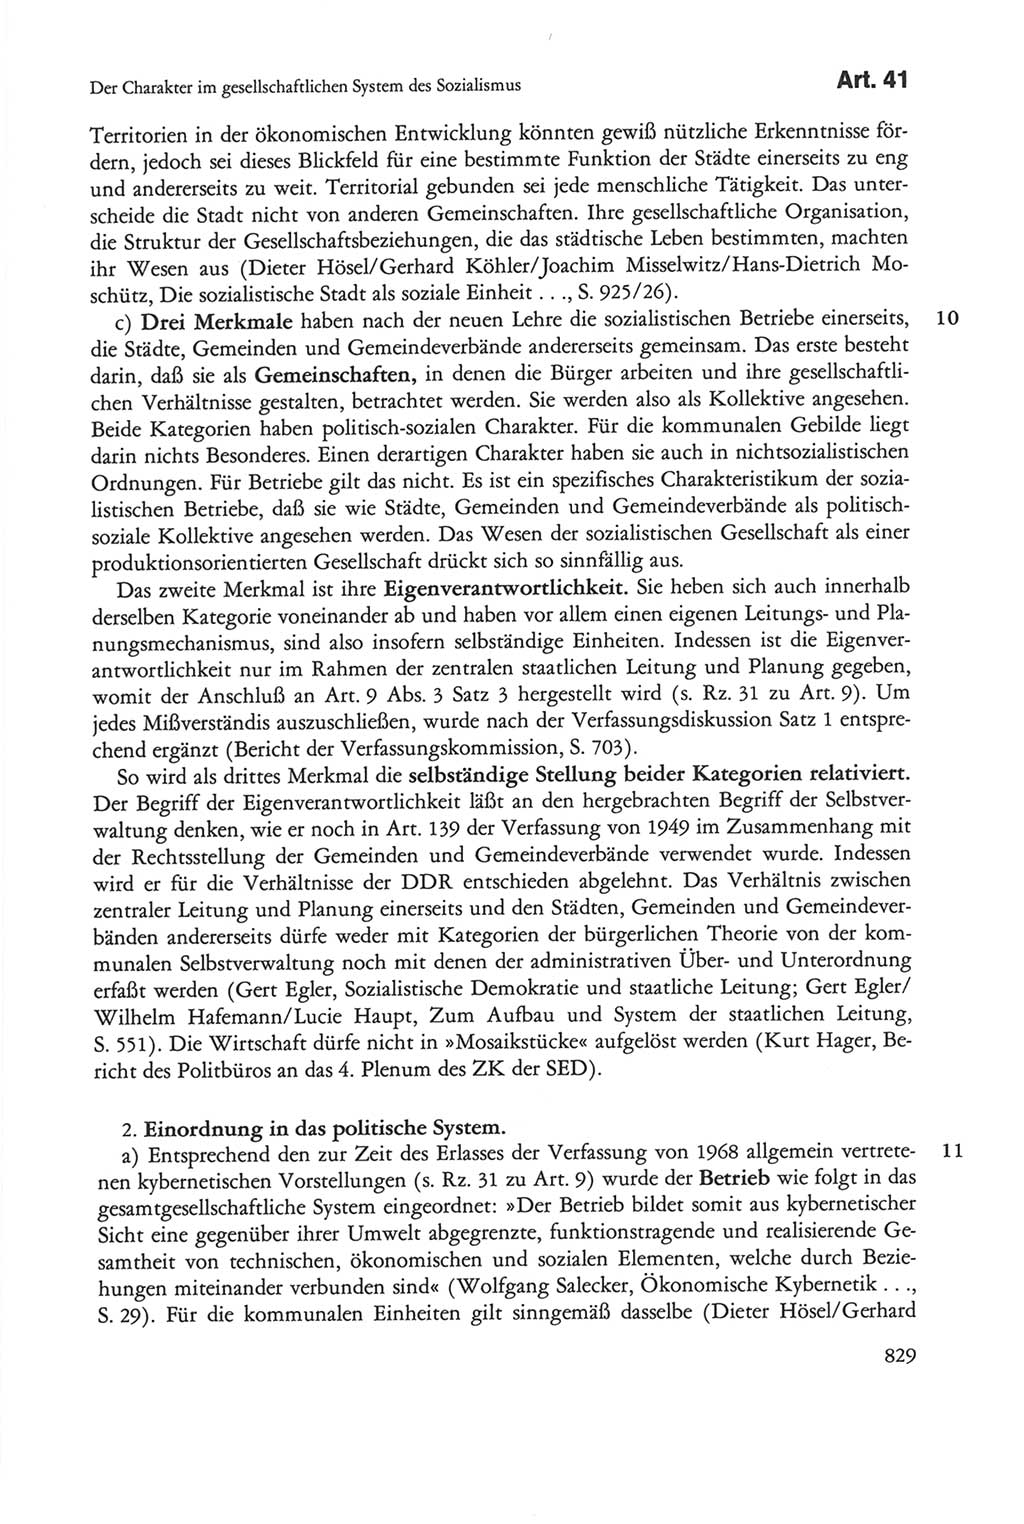 Die sozialistische Verfassung der Deutschen Demokratischen Republik (DDR), Kommentar 1982, Seite 829 (Soz. Verf. DDR Komm. 1982, S. 829)